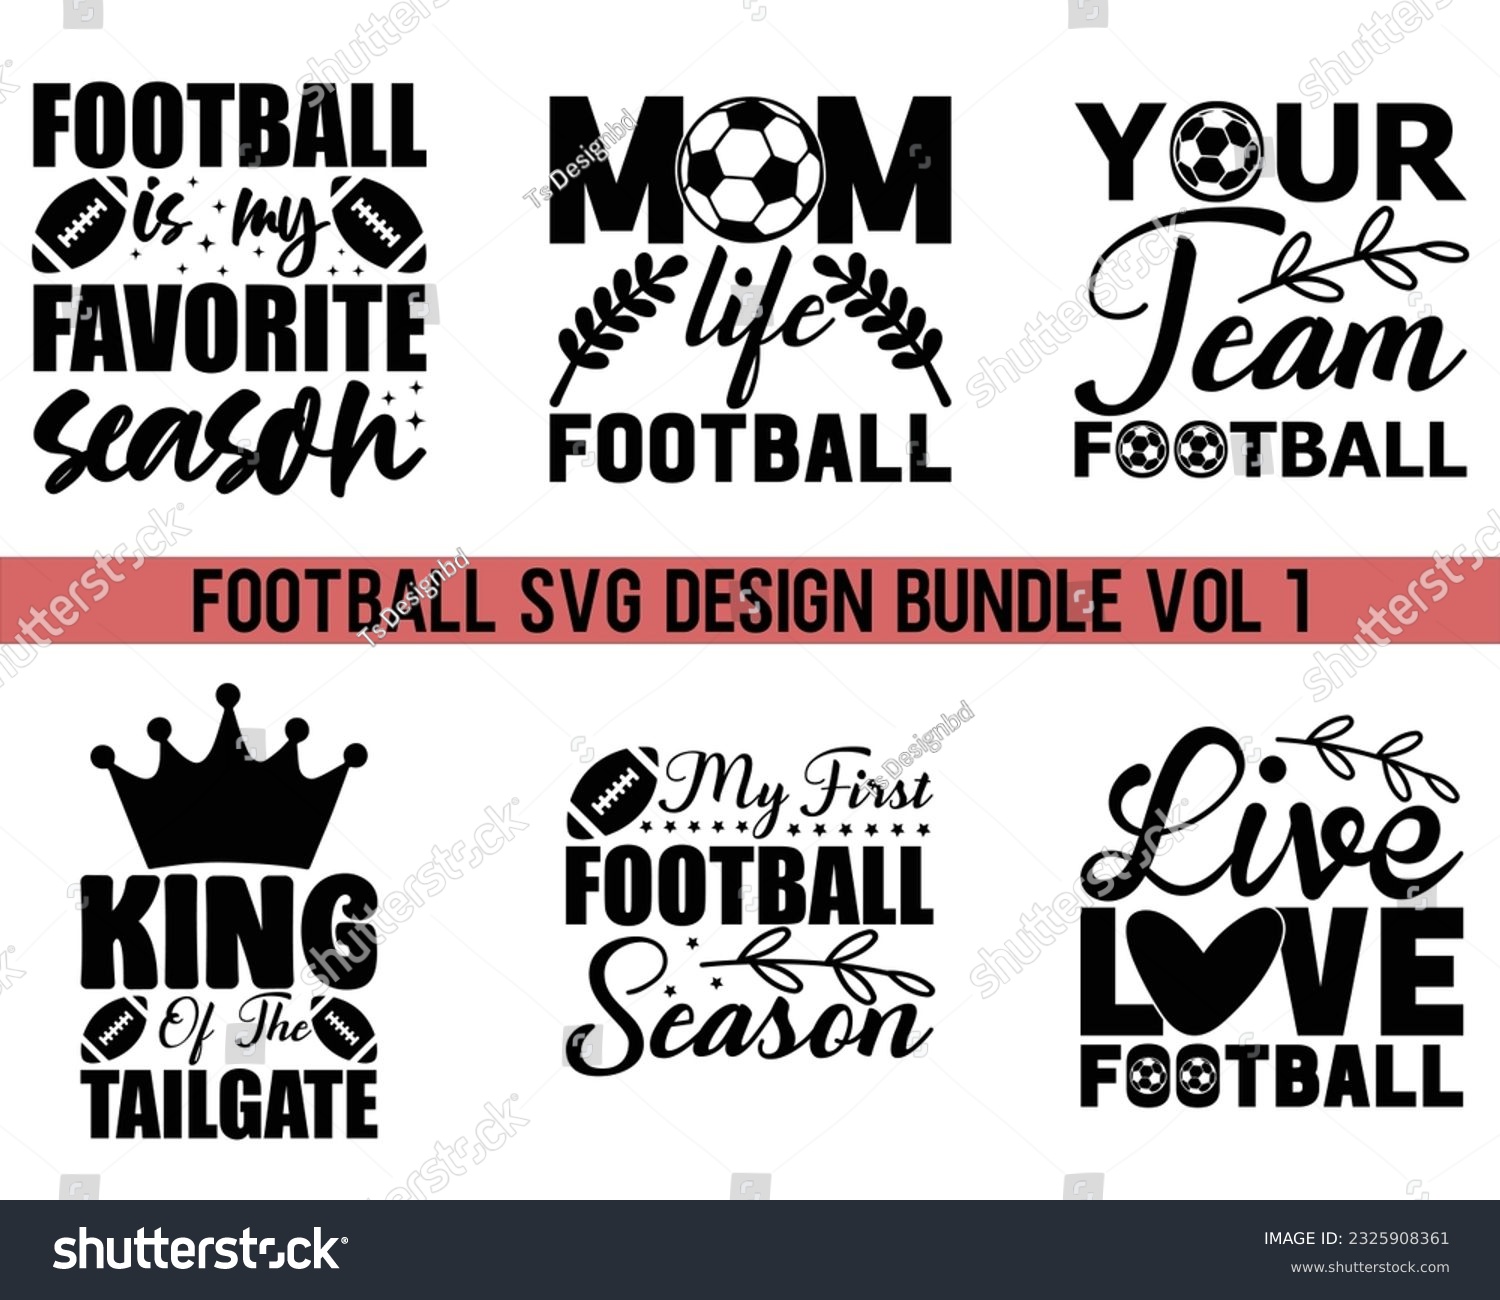 SVG of  Football Svg Design Bundle Vol 1,Football svg Bundle,Football Game Day svg, Funny Footbal Sayings,Cut Files,Eps File,Football Mom Dad Sister SVG,Svg Bundle svg